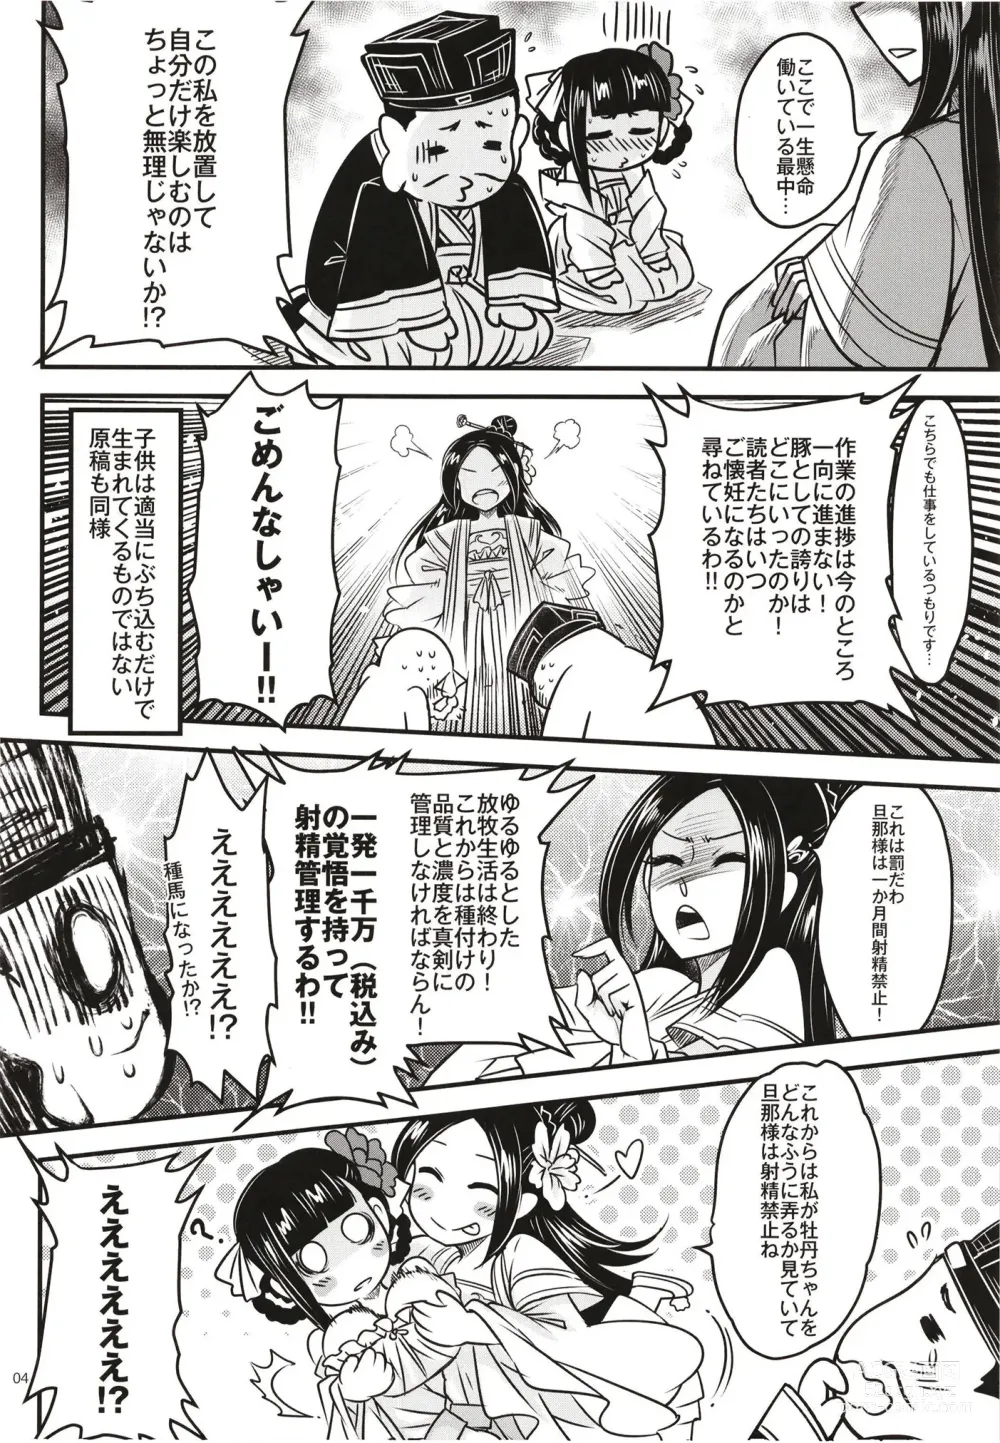 Page 6 of doujinshi Hyakkasou 12 <<Jitsuroku Makyou Hyakkasou Kikou>>